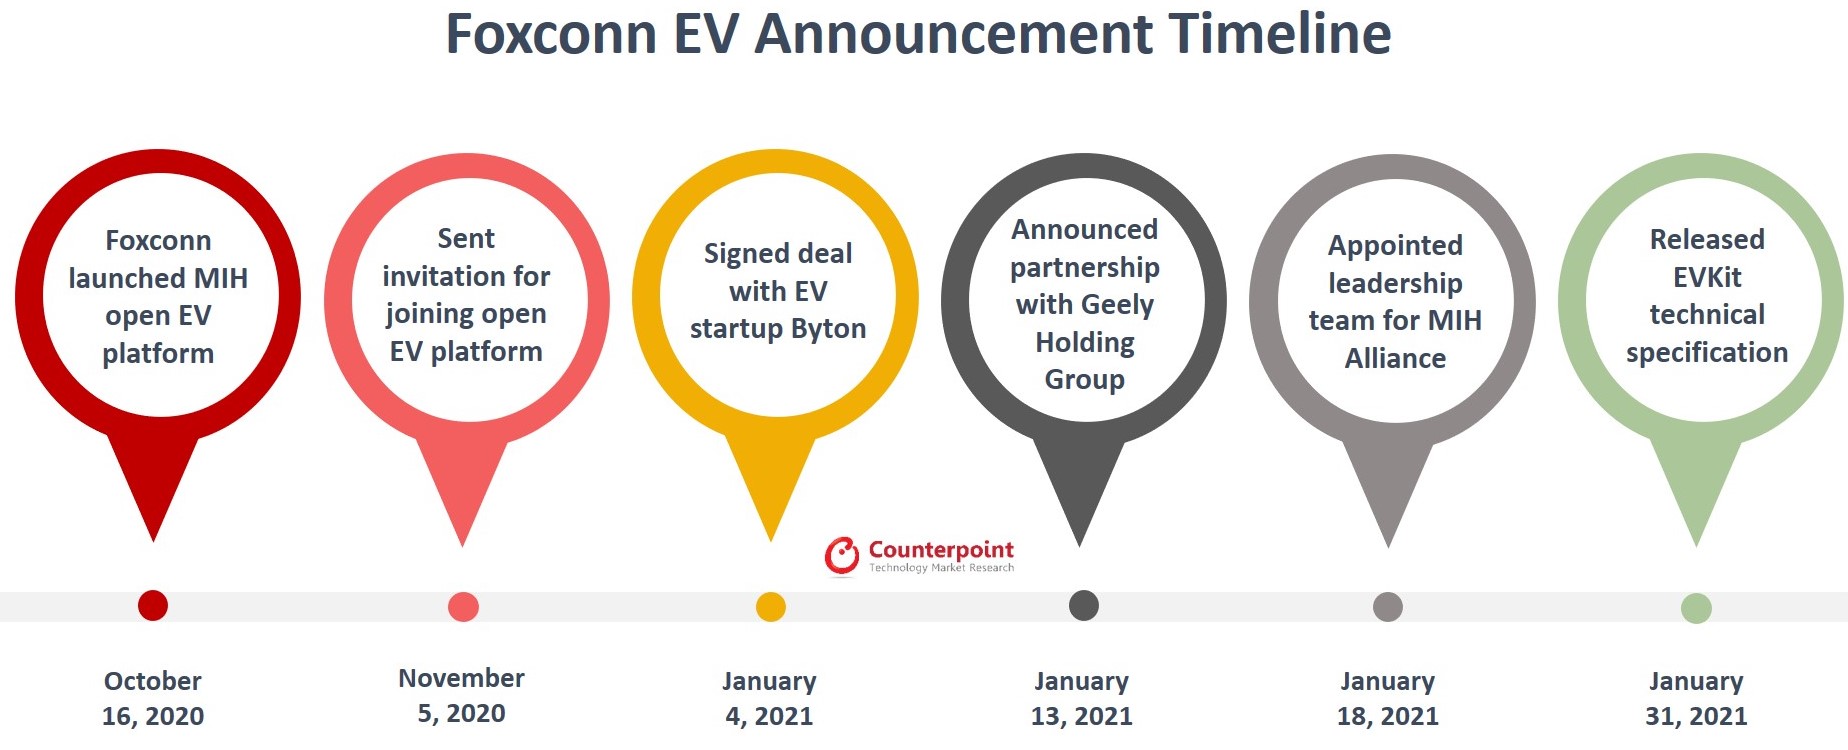 Foxconn EV Announcement Timeline